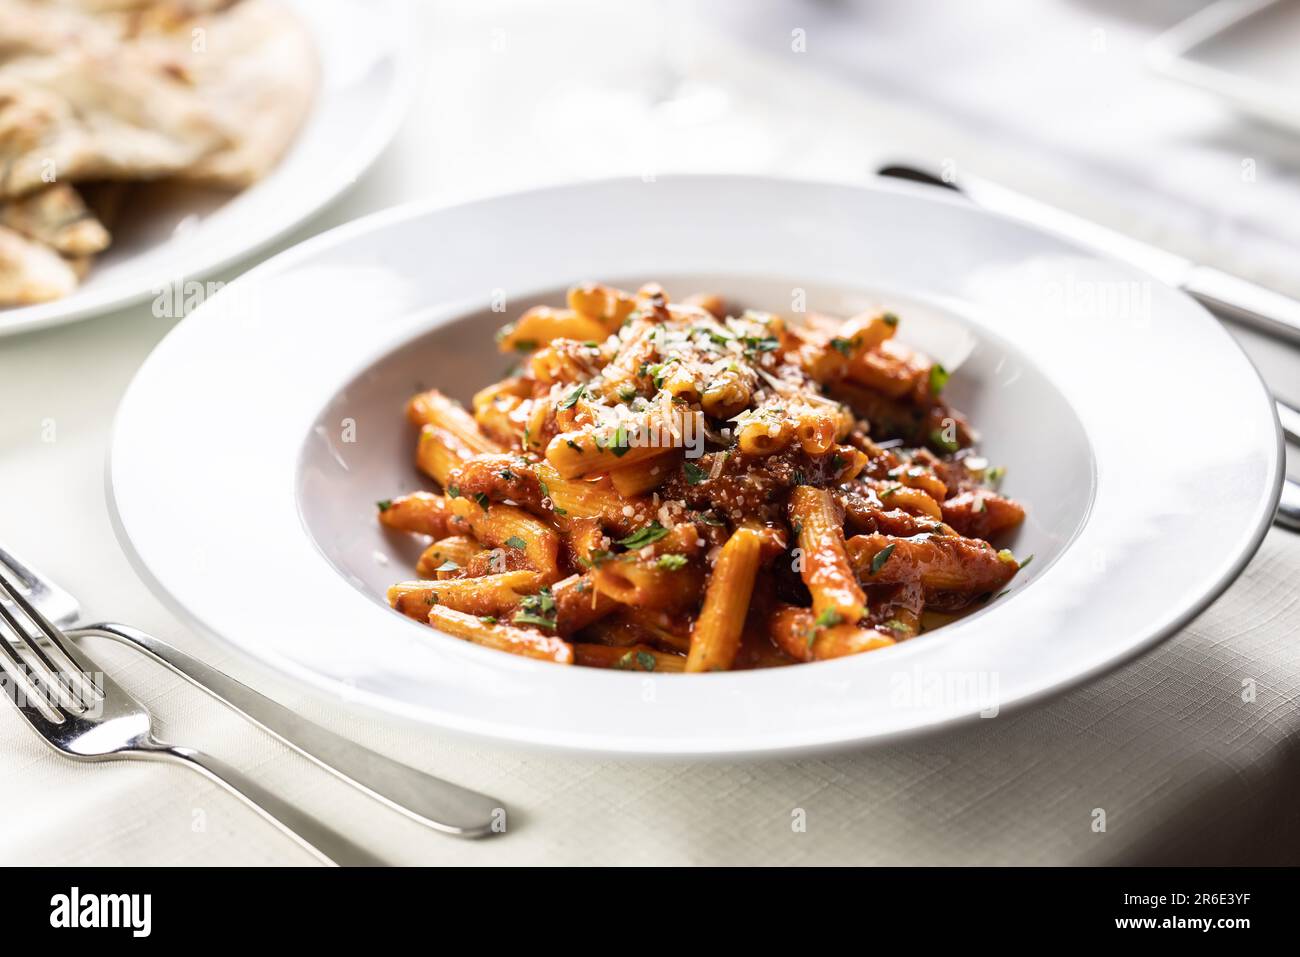 Pène alla arrabiata, pâtes à la sauce rouge italienne servies sur une table dans une assiette avec une râpe fraîche de parmesan. Banque D'Images